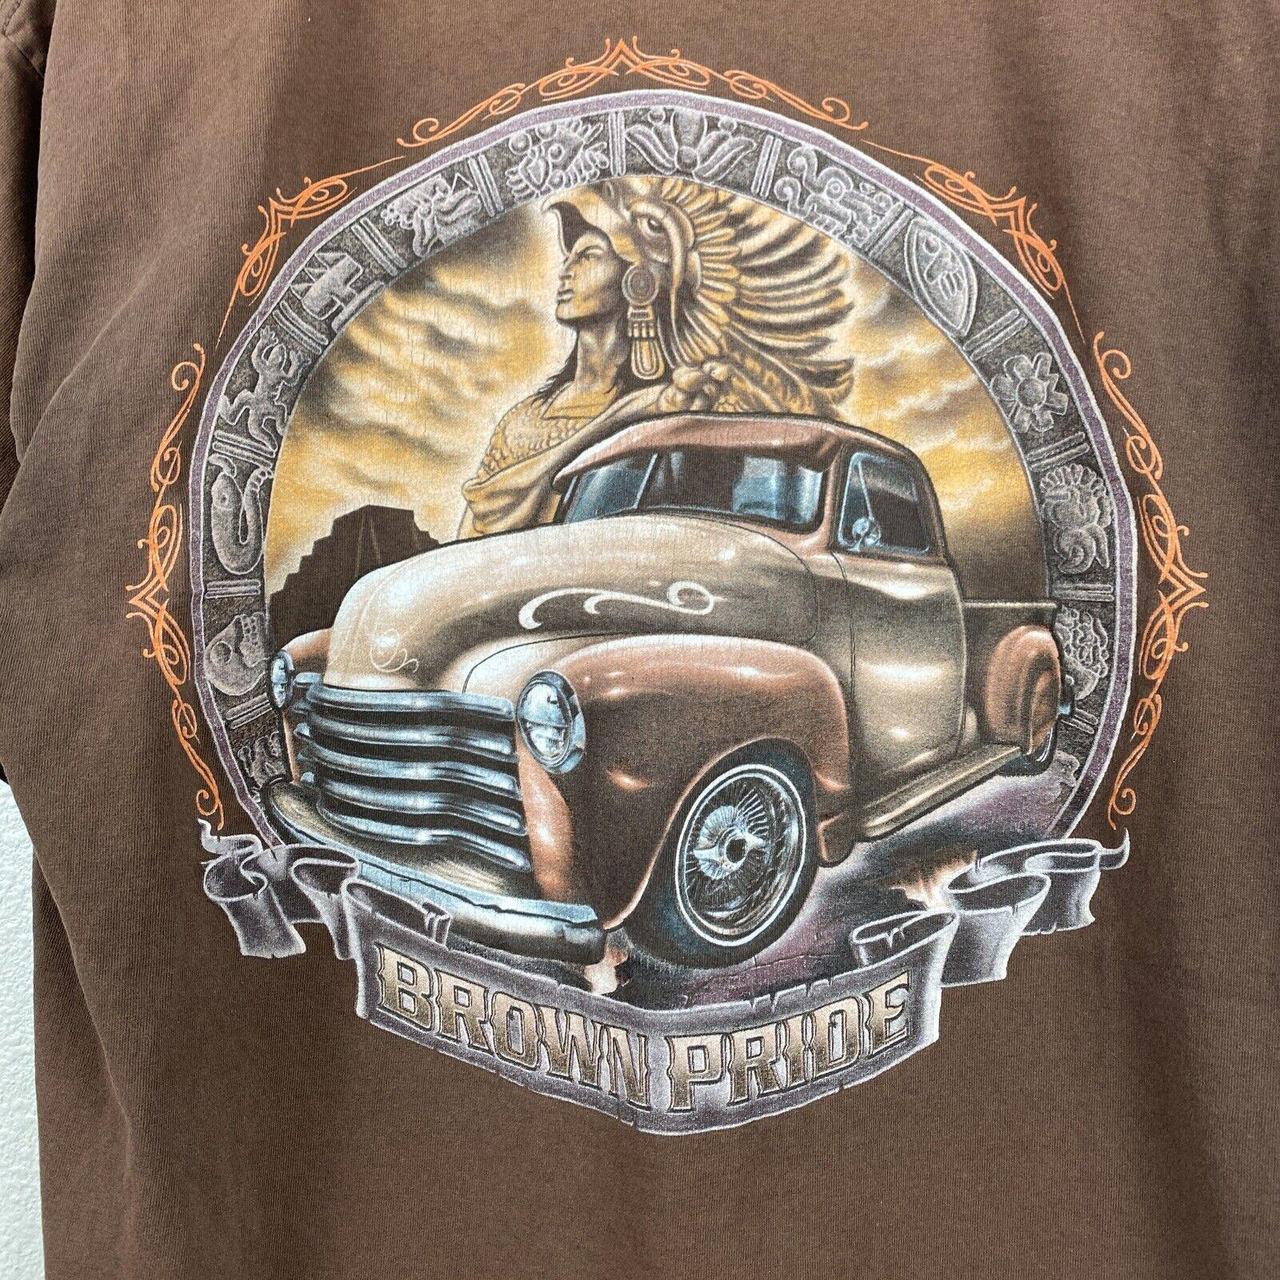 Vintage late 90s “Rams” Los Angeles t-shirt • in - Depop